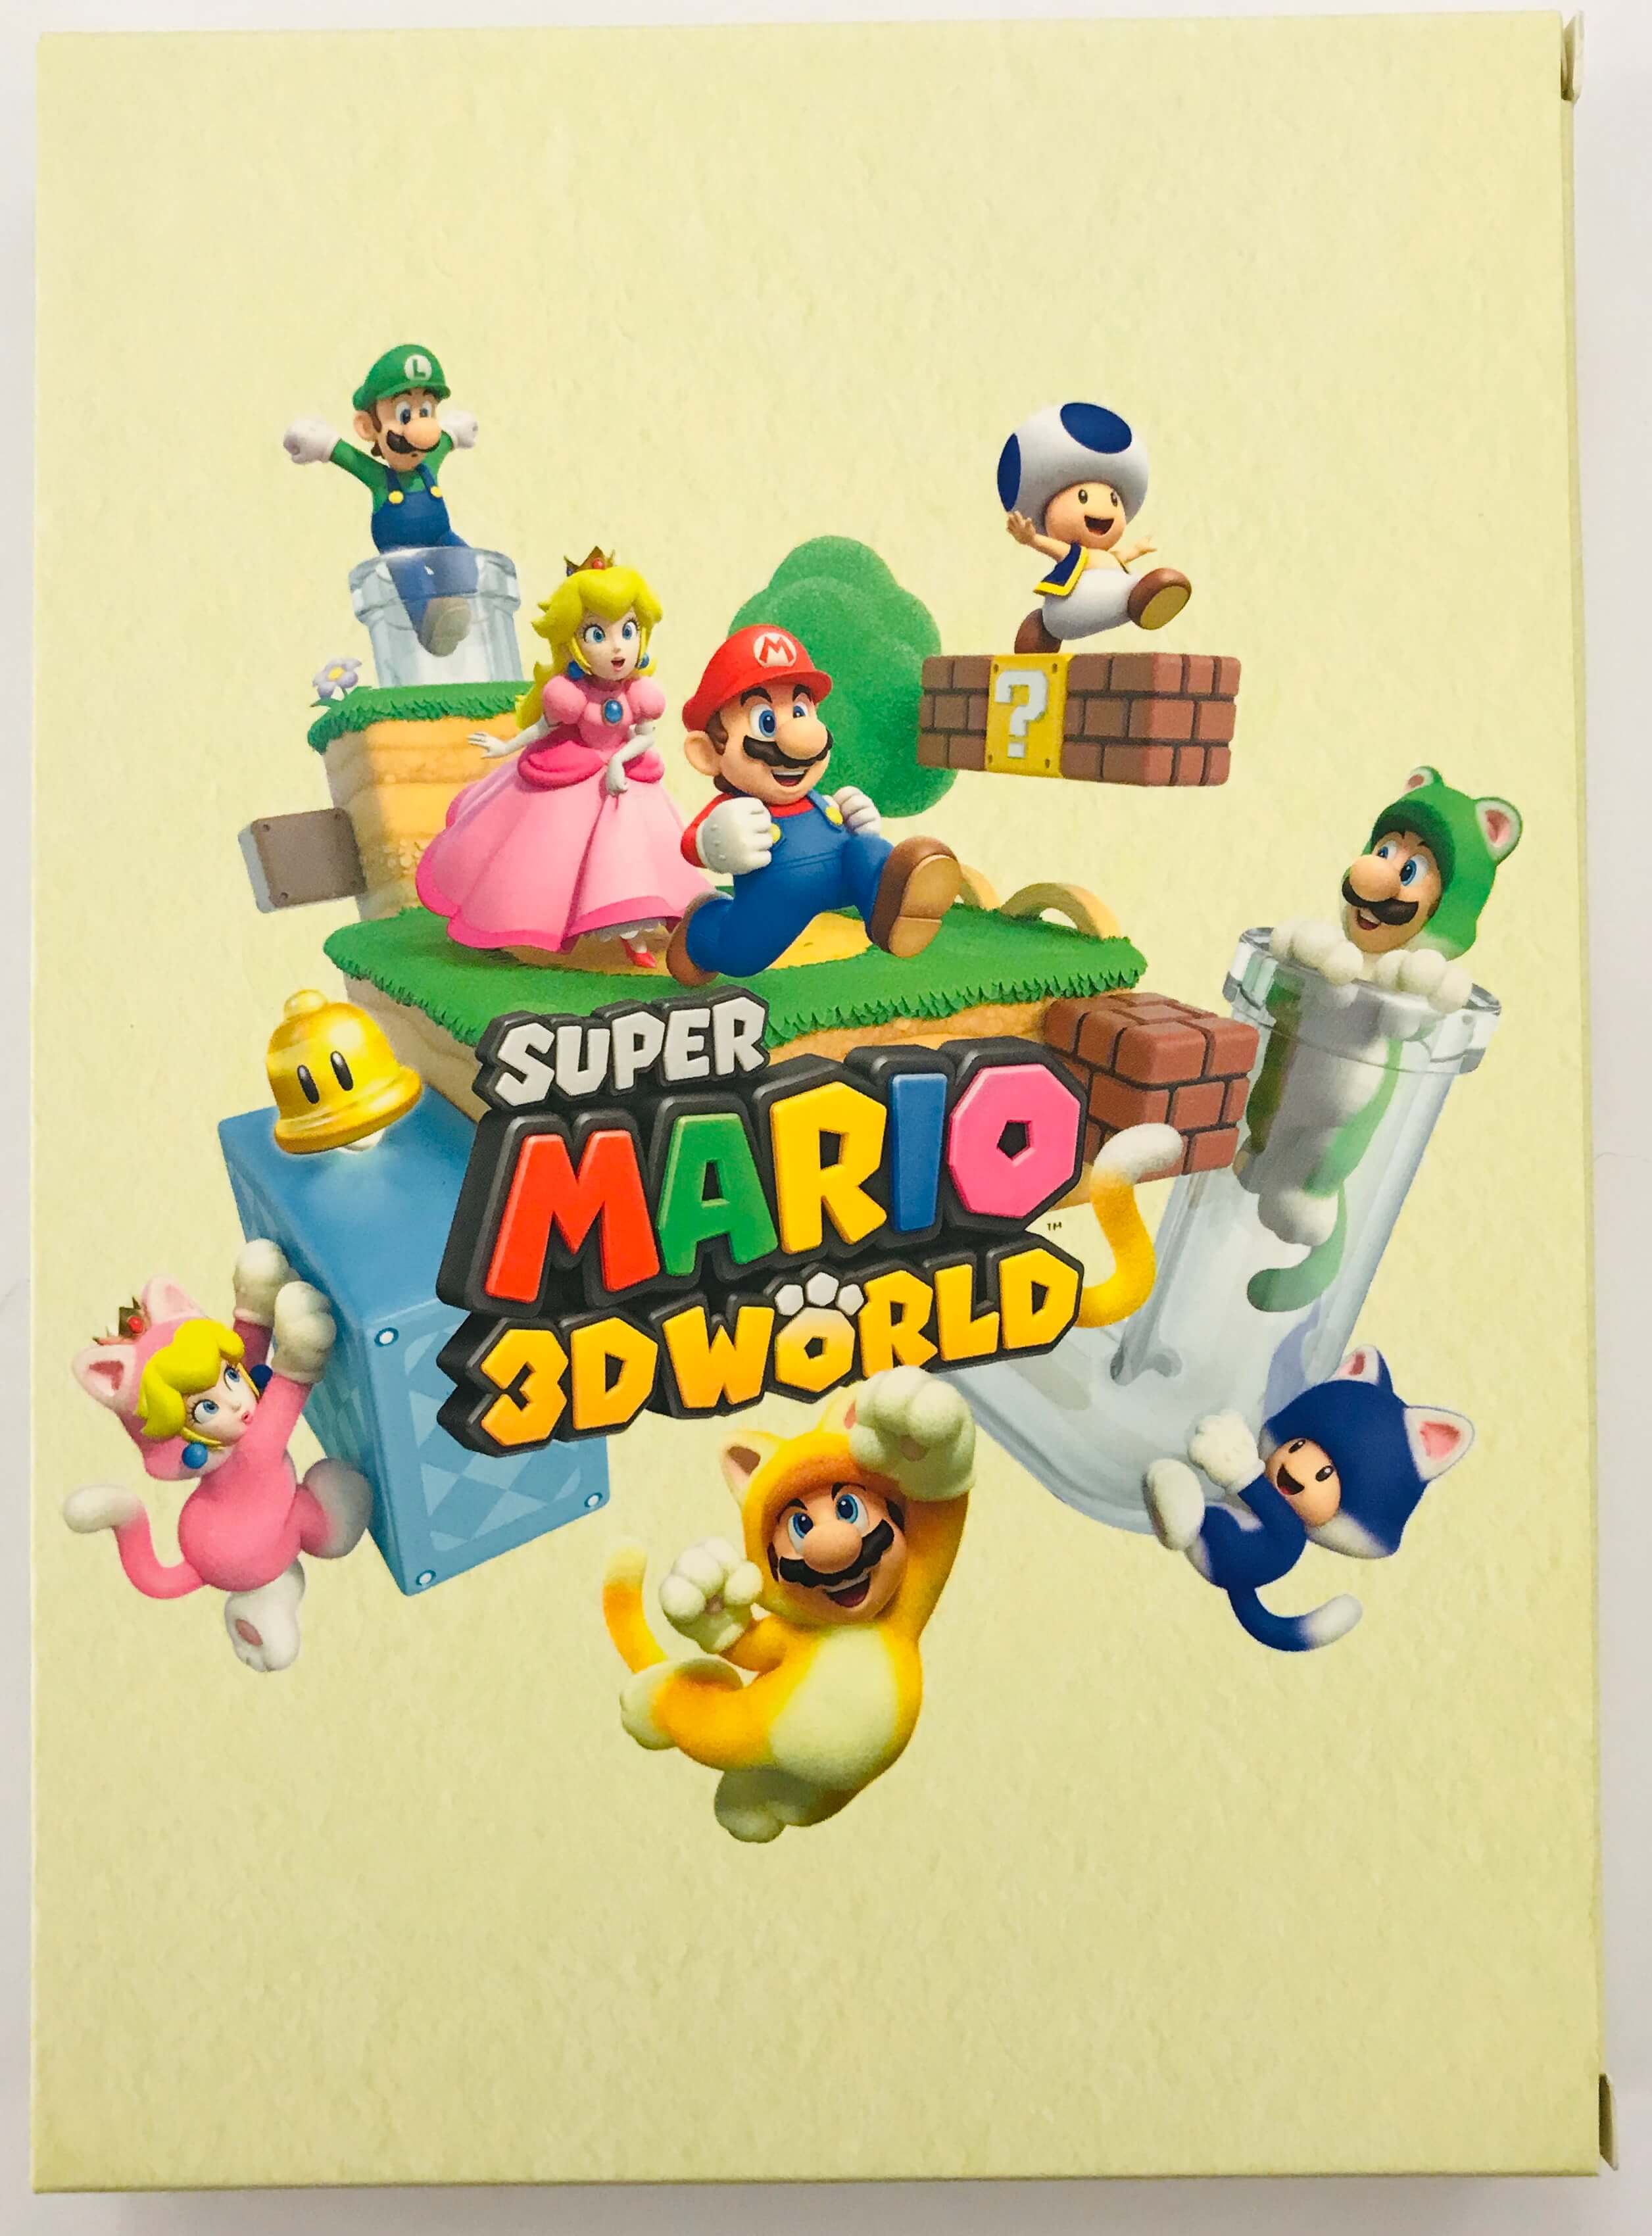 super mario 3d world online game